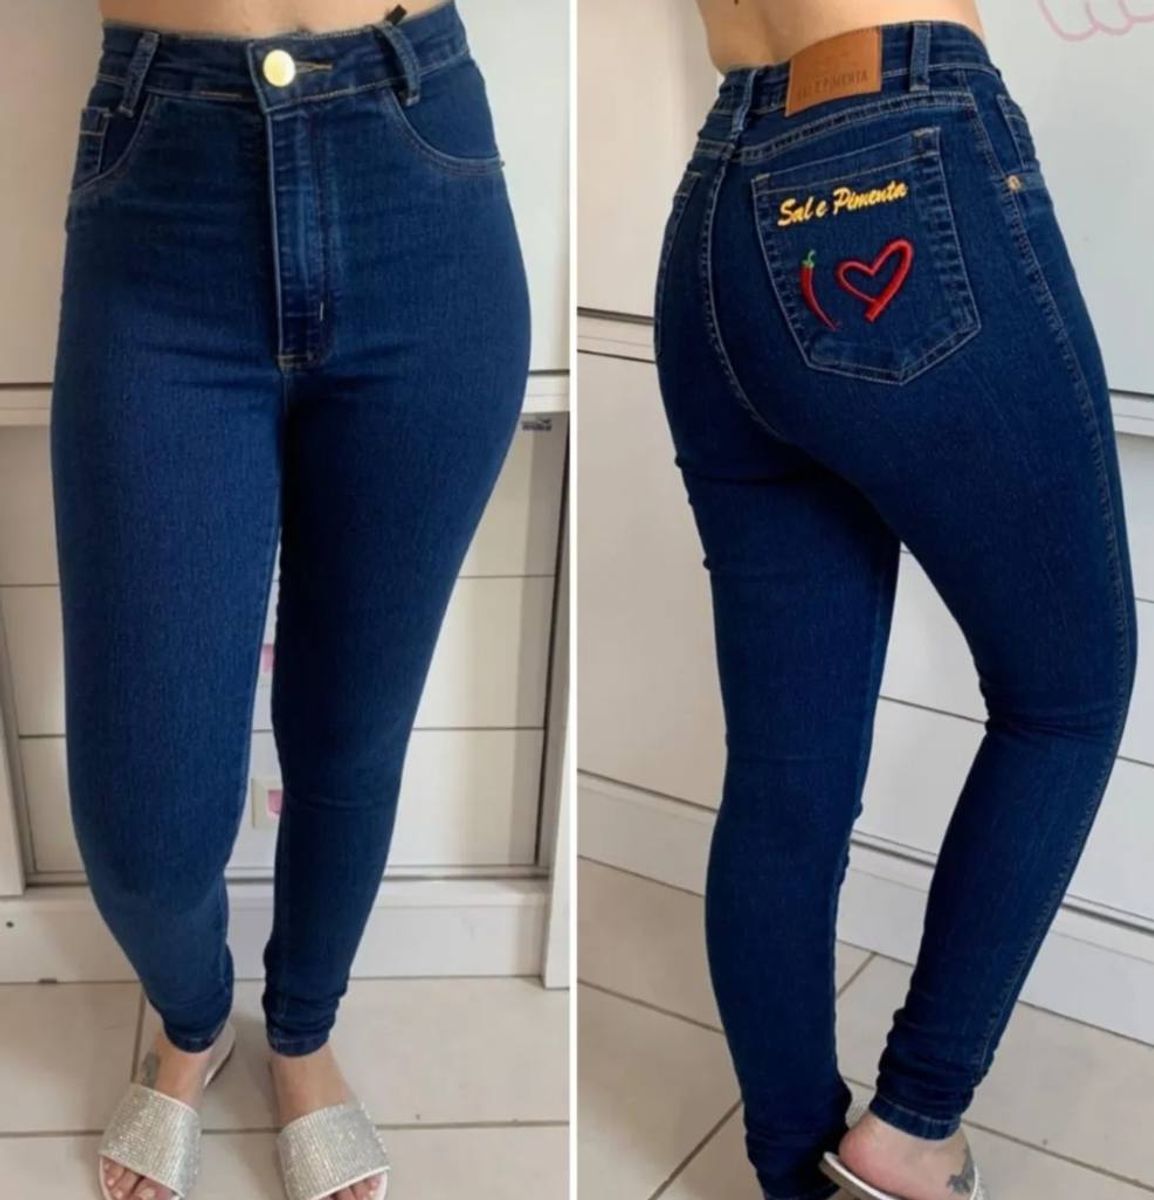 calça jeans feminina sal e pimenta ORIGINAL linha premium estampa laser